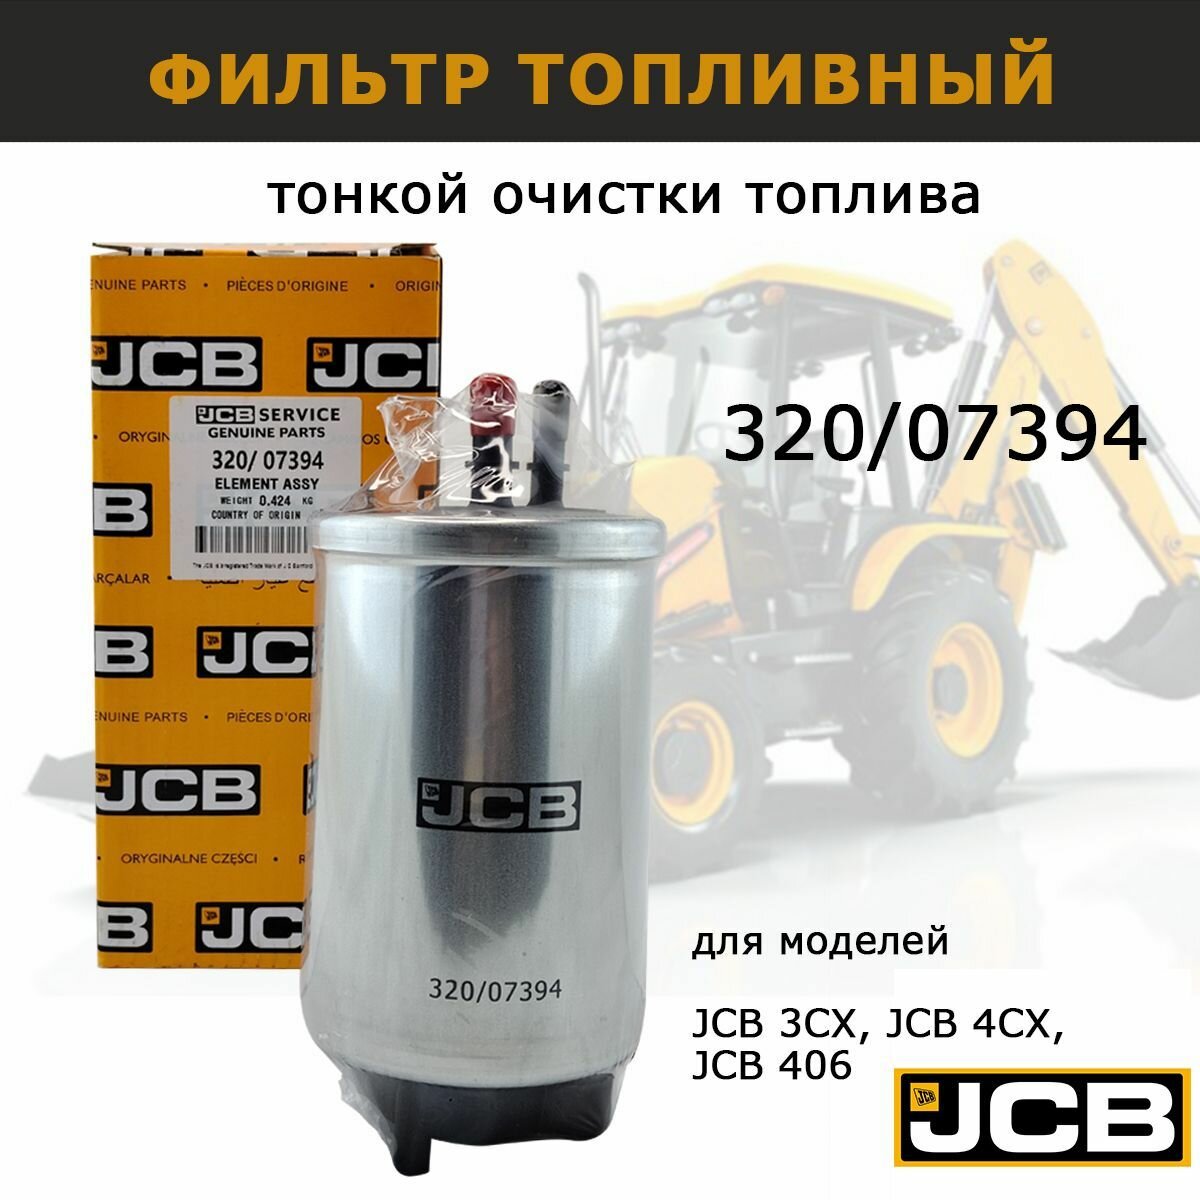 Фильтр Топливный Jcb - 320/07394 JCB арт. 320/07394